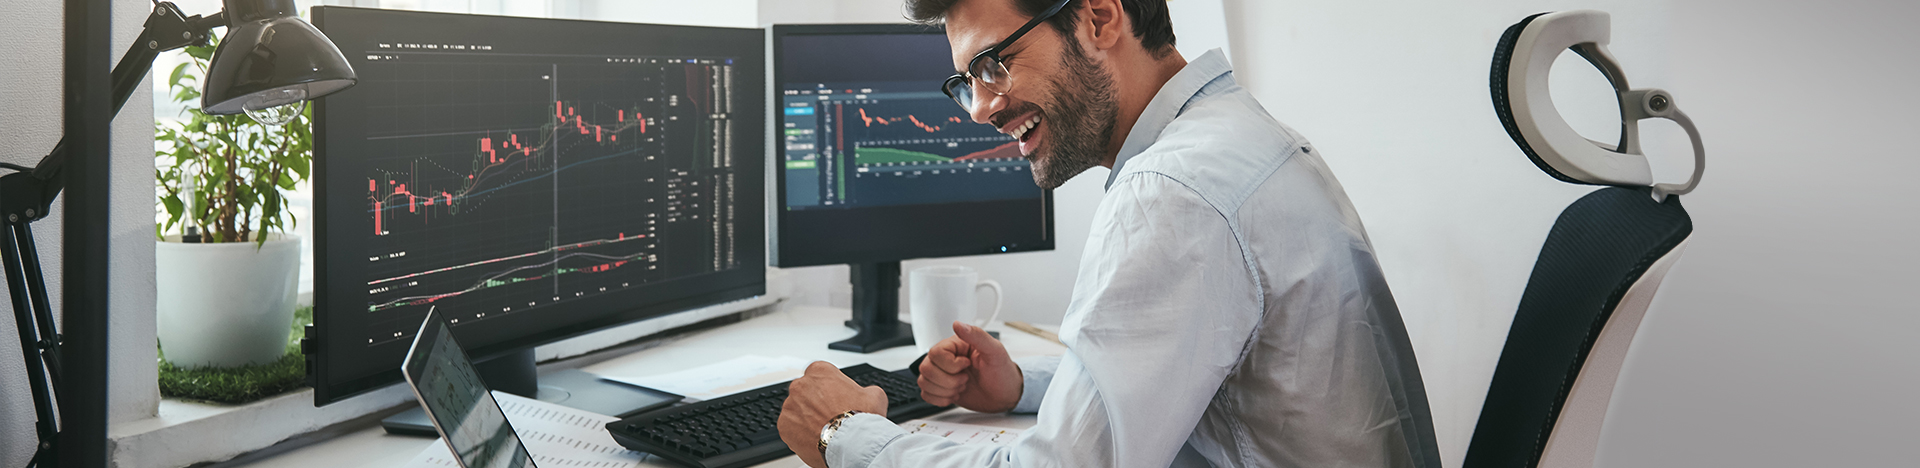 Uomo con tablet e computer, sorride osservando i risultati ottenuti sui mercati finanziari.